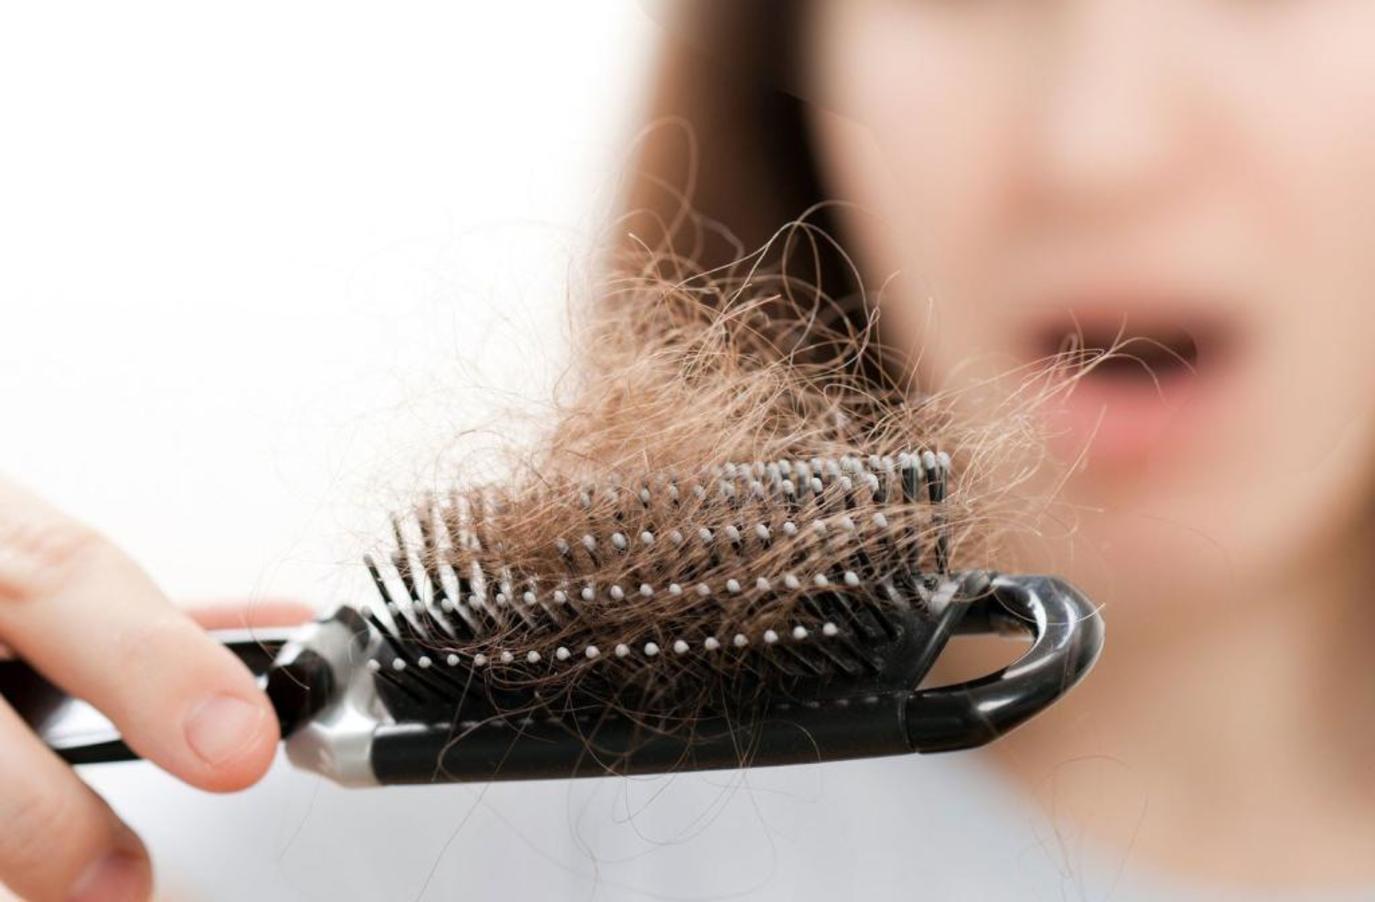 علاج تساقط الشعر الوراثي بقناع الثوم مجلة سيدتي